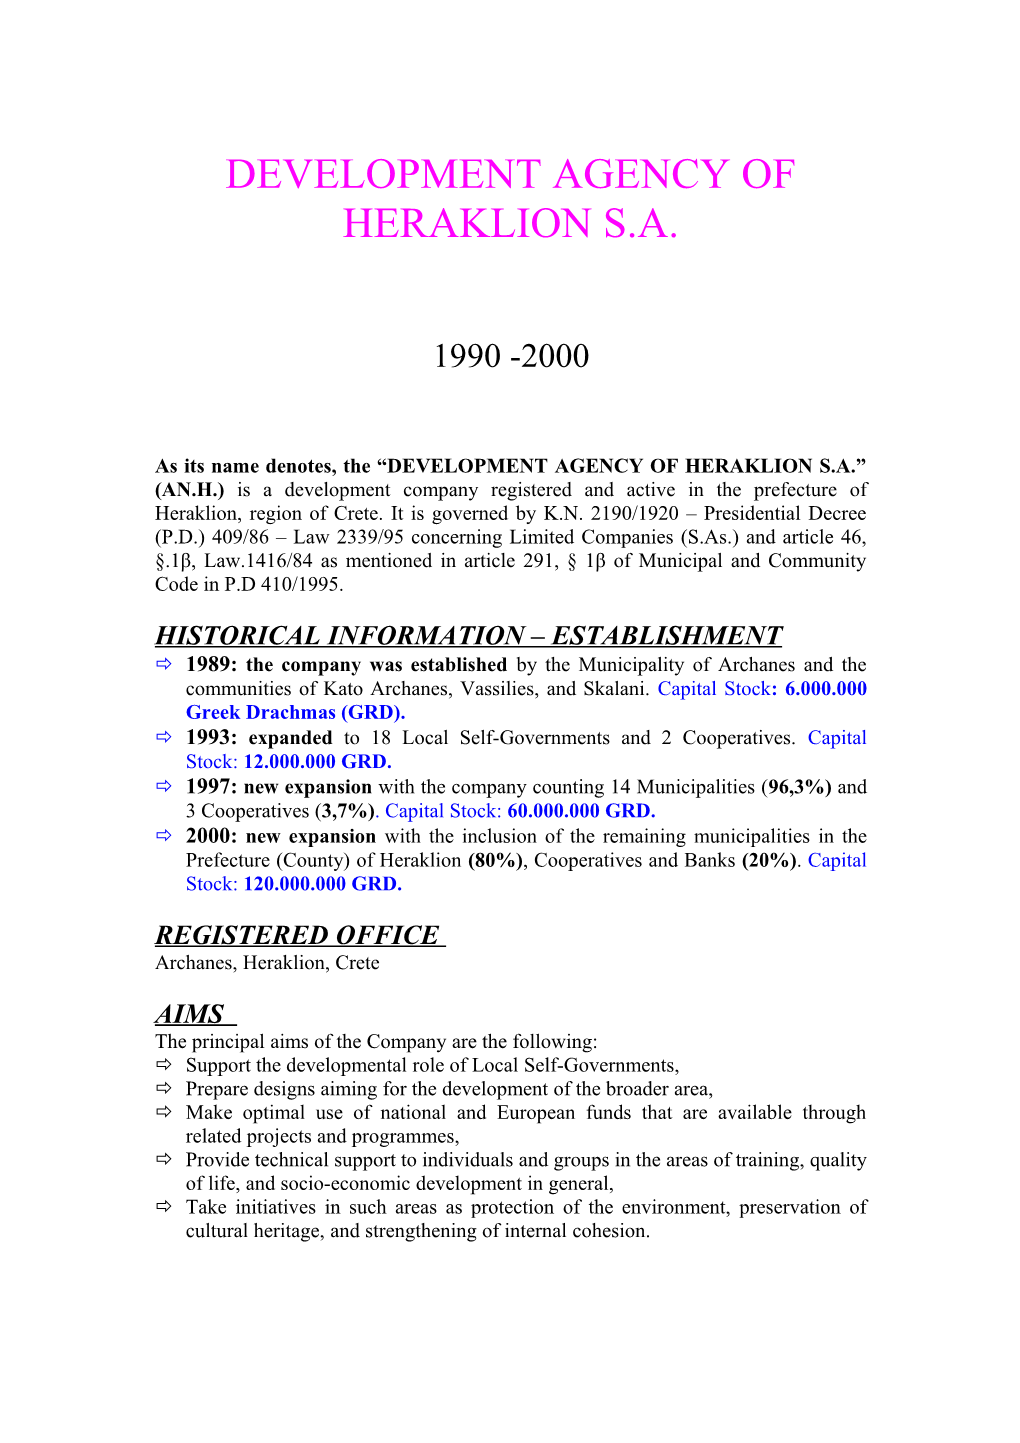 Development Agency of Heraklion S.A